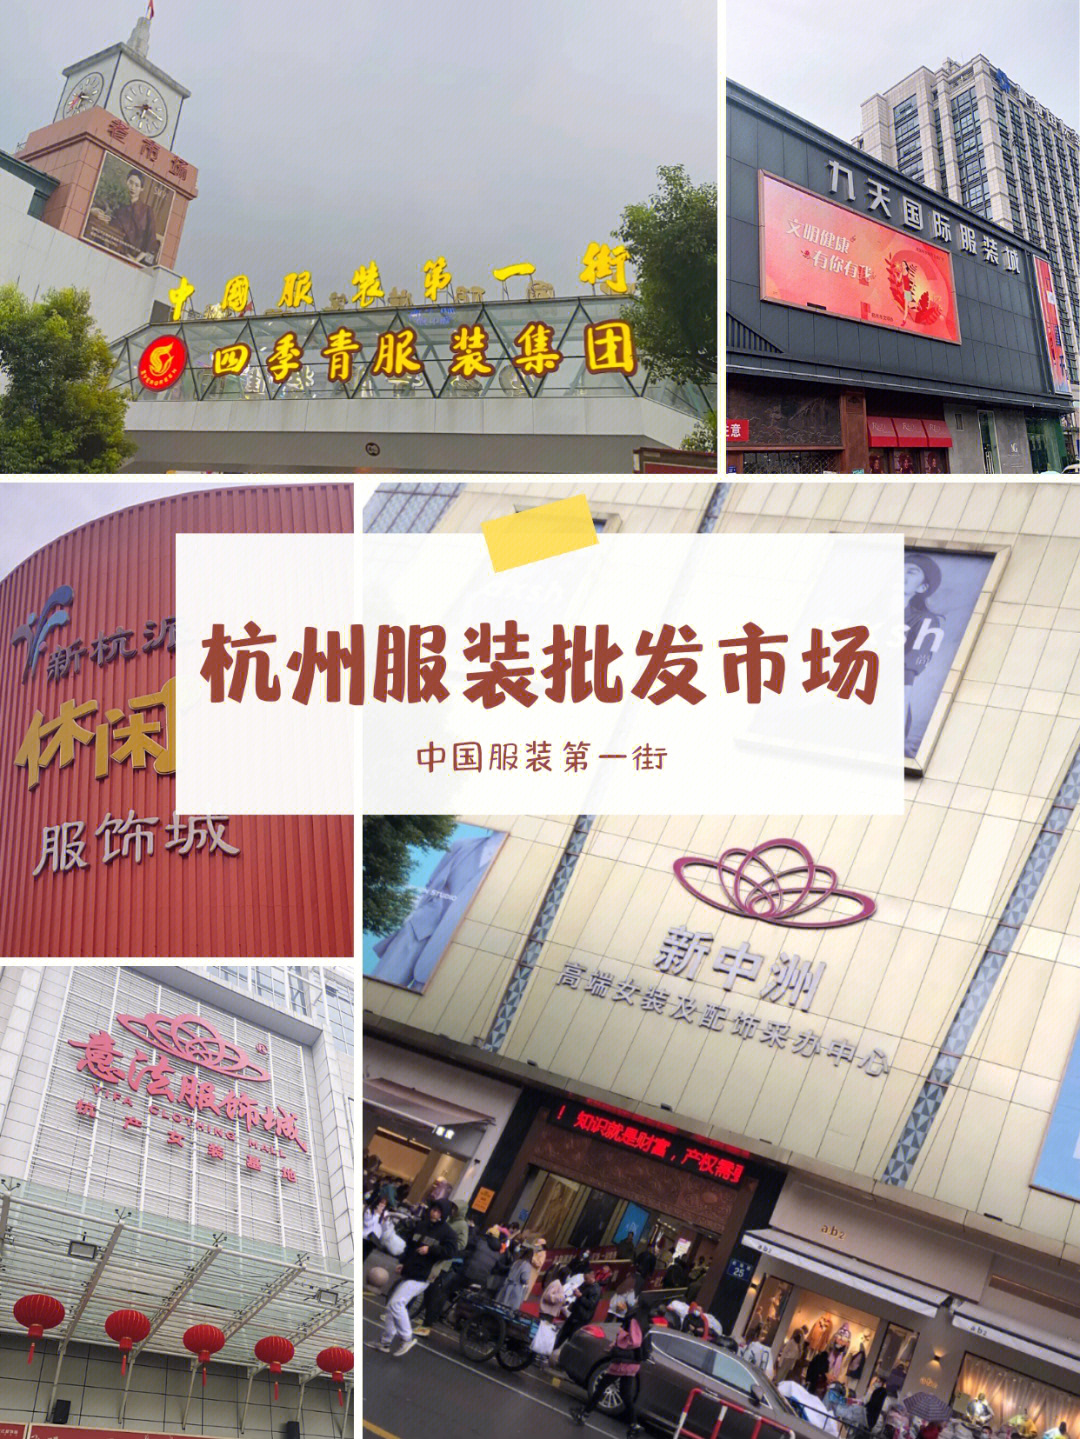 杭州四季青服装批发市场中国最具影响力的服装一级批发与流通市场之